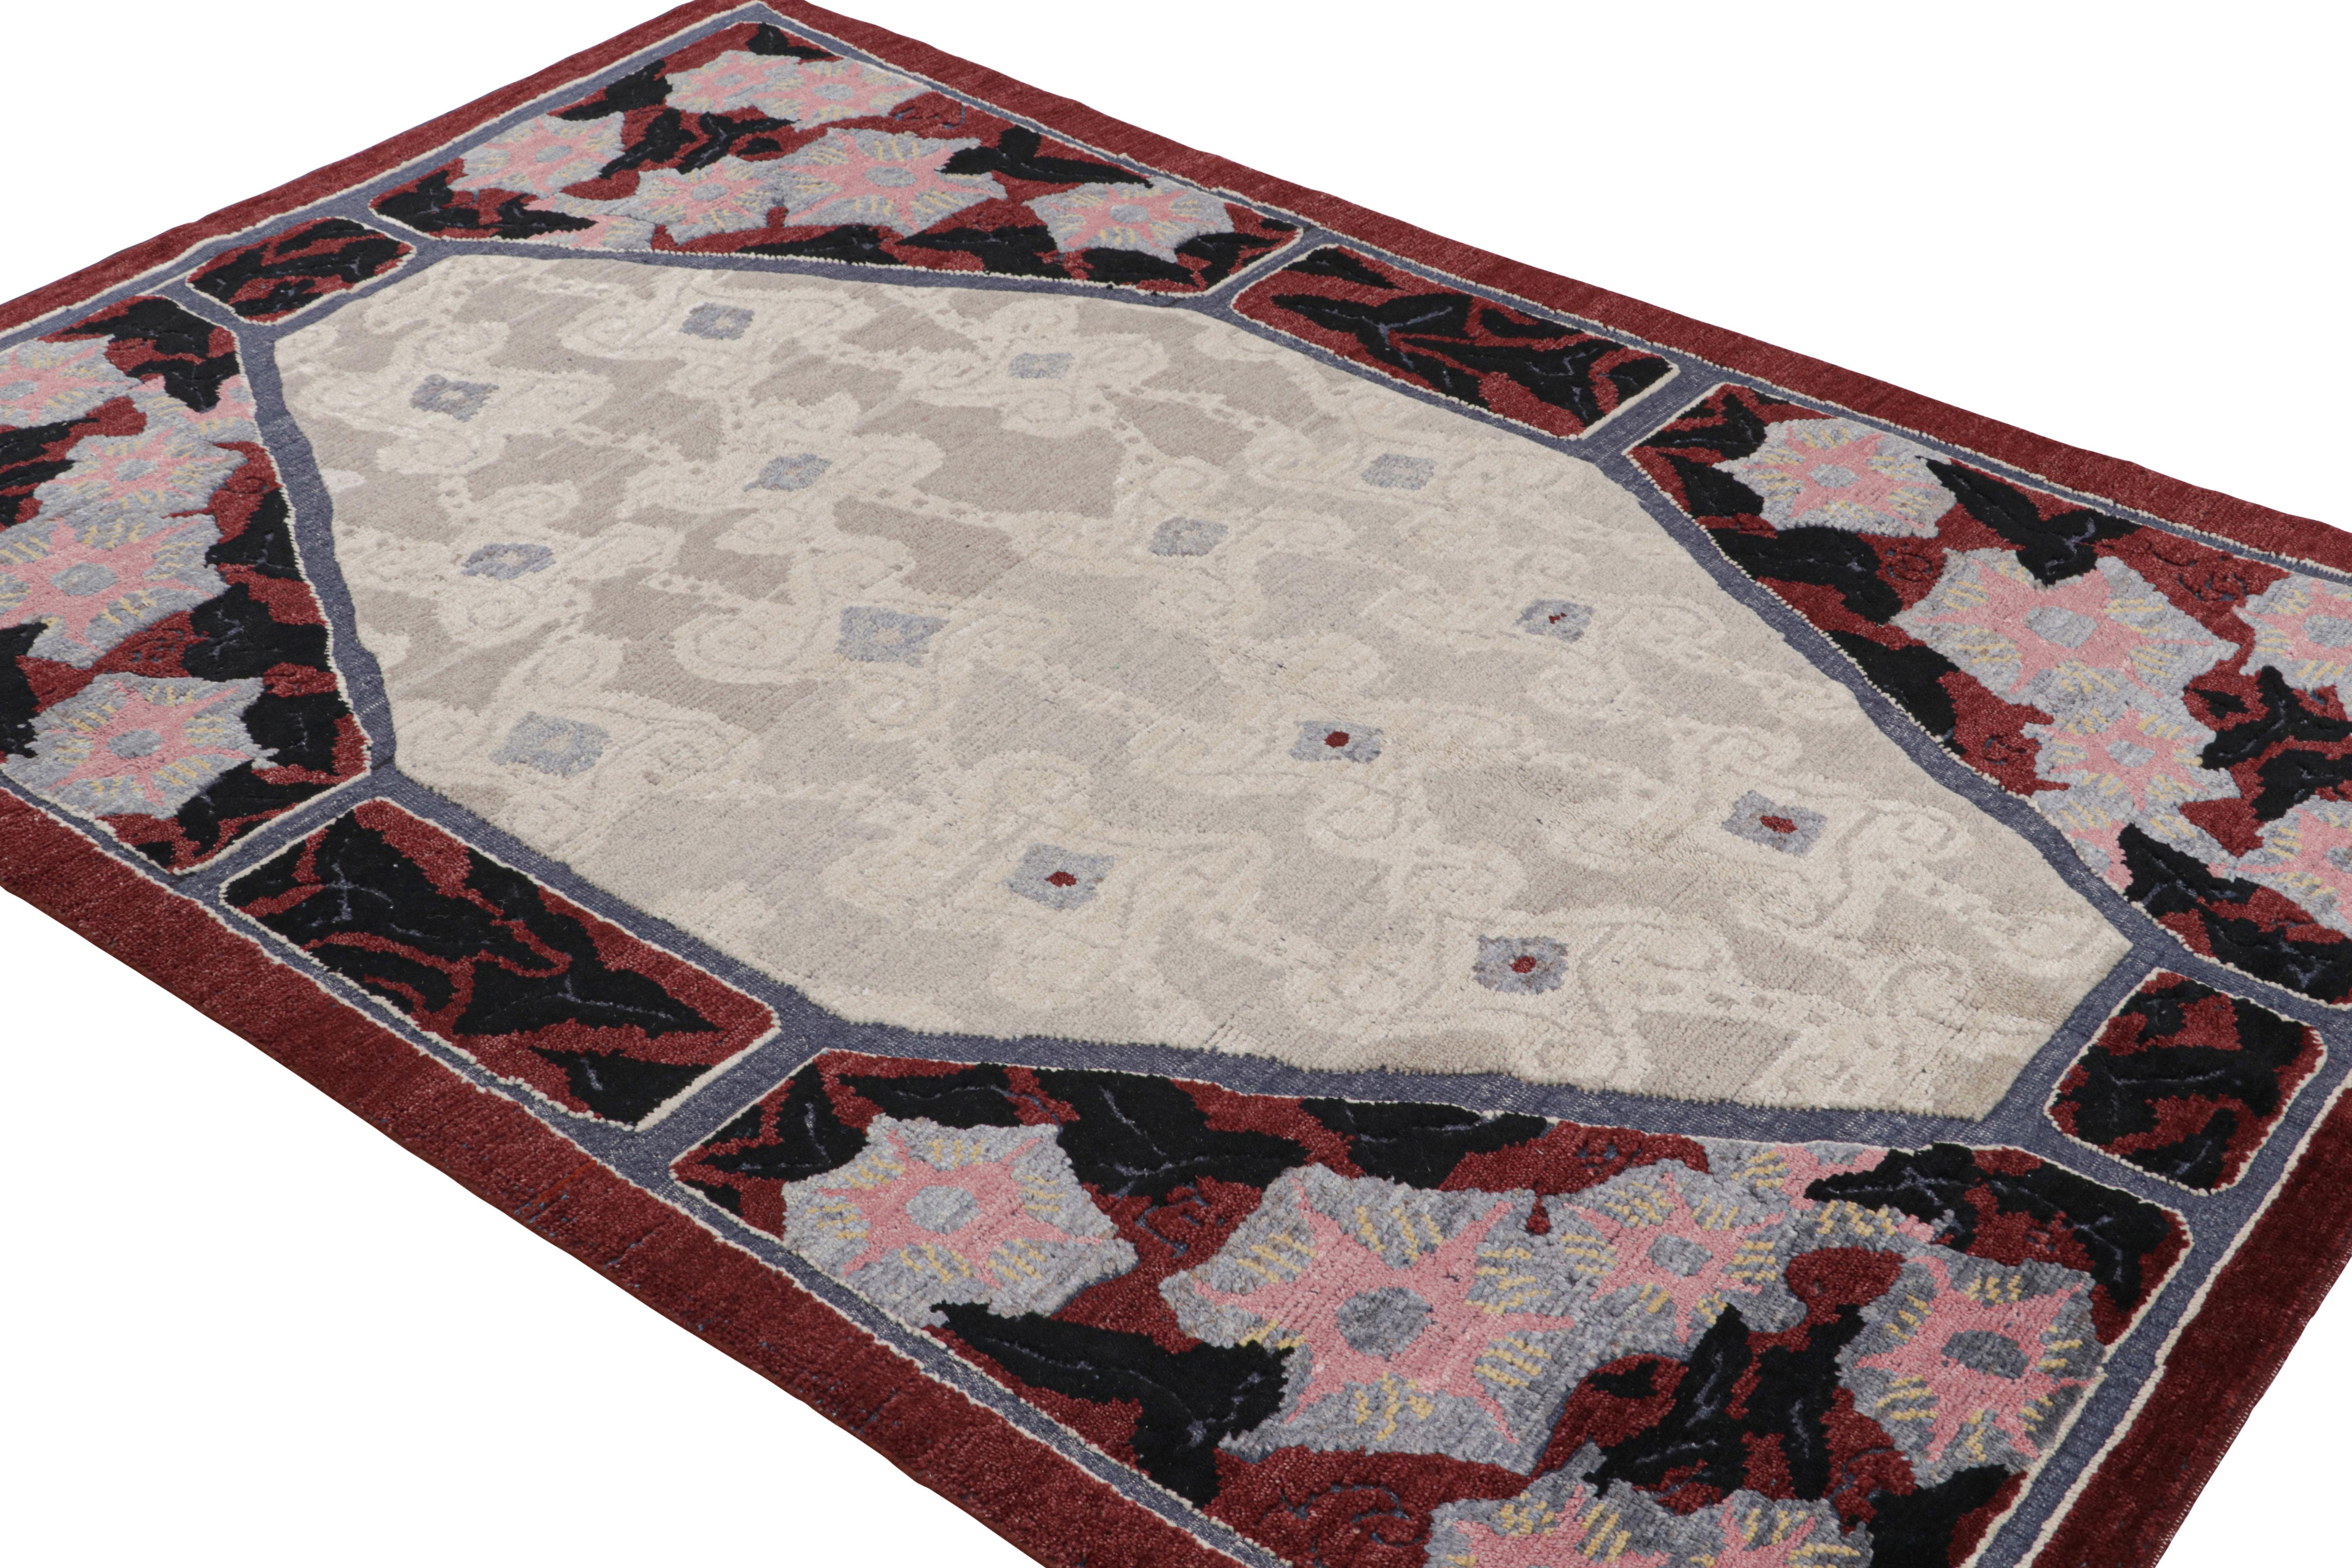 Noué à la main en laine, ce tapis Art déco français 6x9 présente un intéressant jeu de rouge et de beige-gris dans les motifs géométriques qui le recouvrent.
 
Sur le Design : 

Les admirateurs de l'artisanat apprécieront le raffinement subtil de la